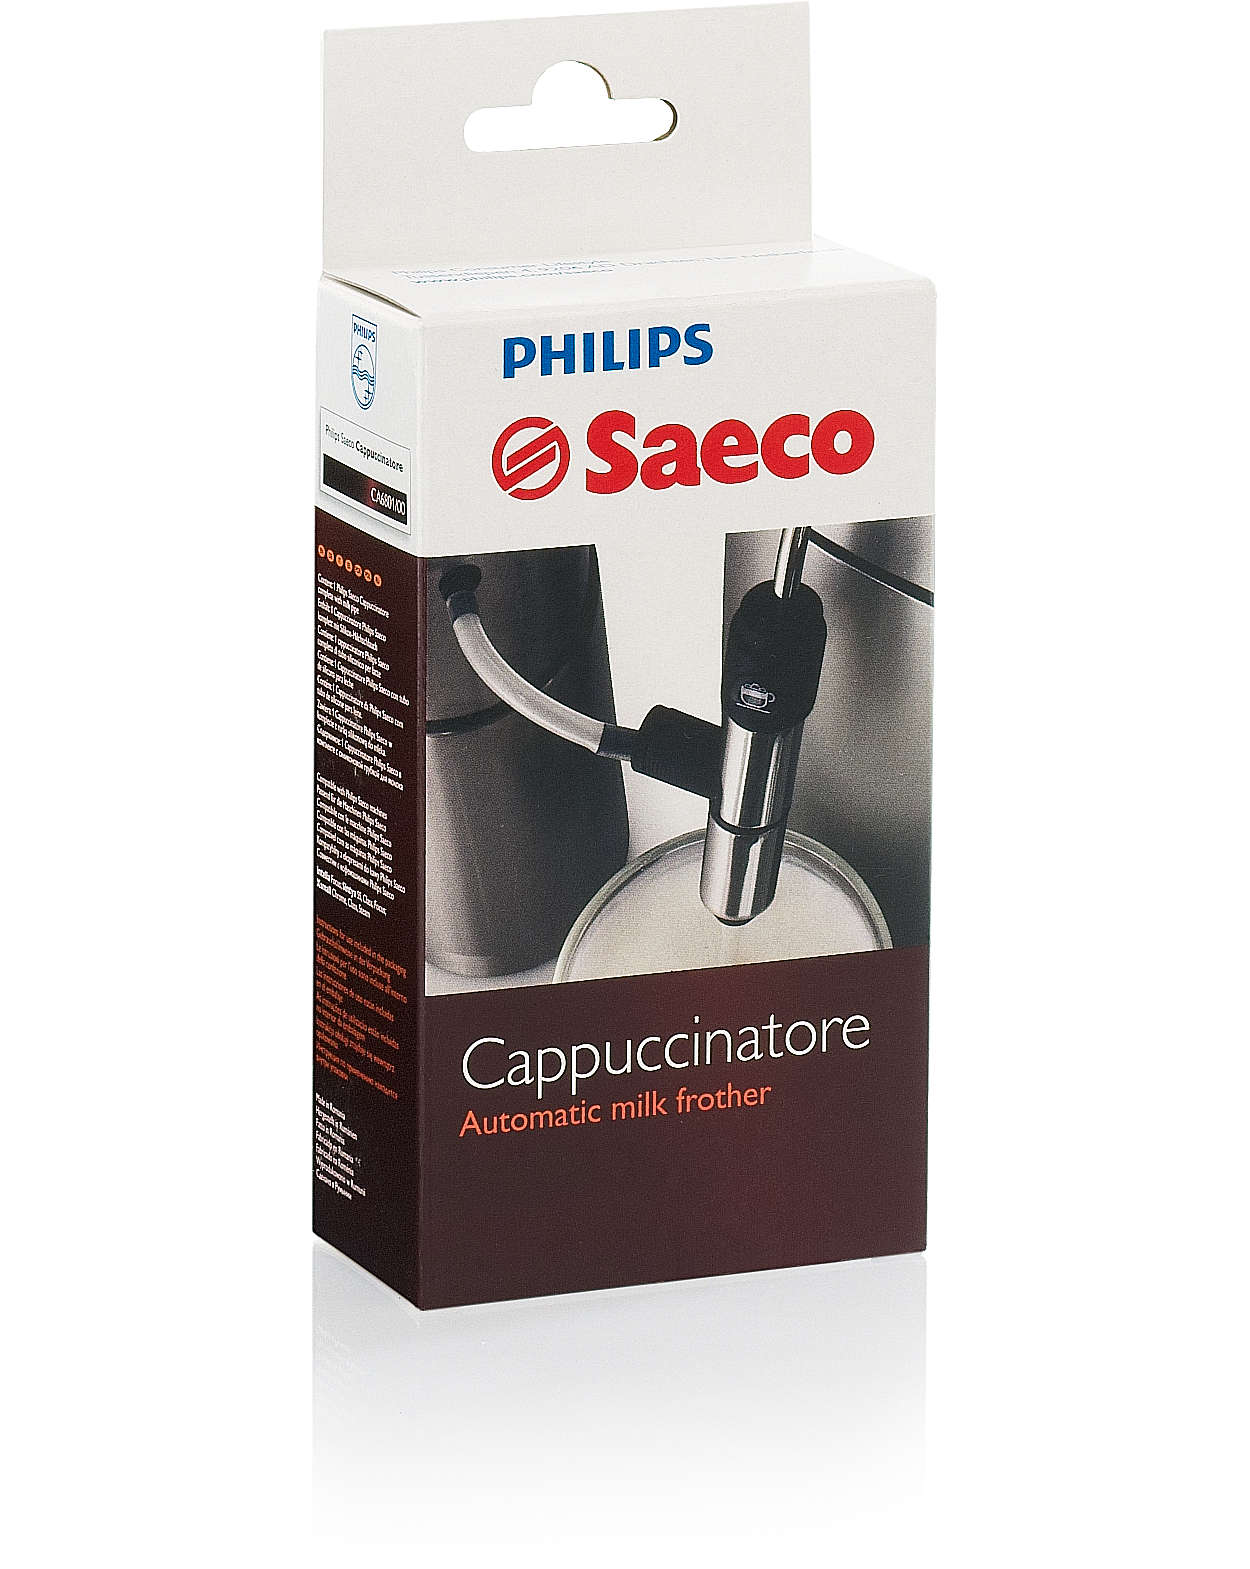 以 Saeco 炮製地道的意式奶泡咖啡